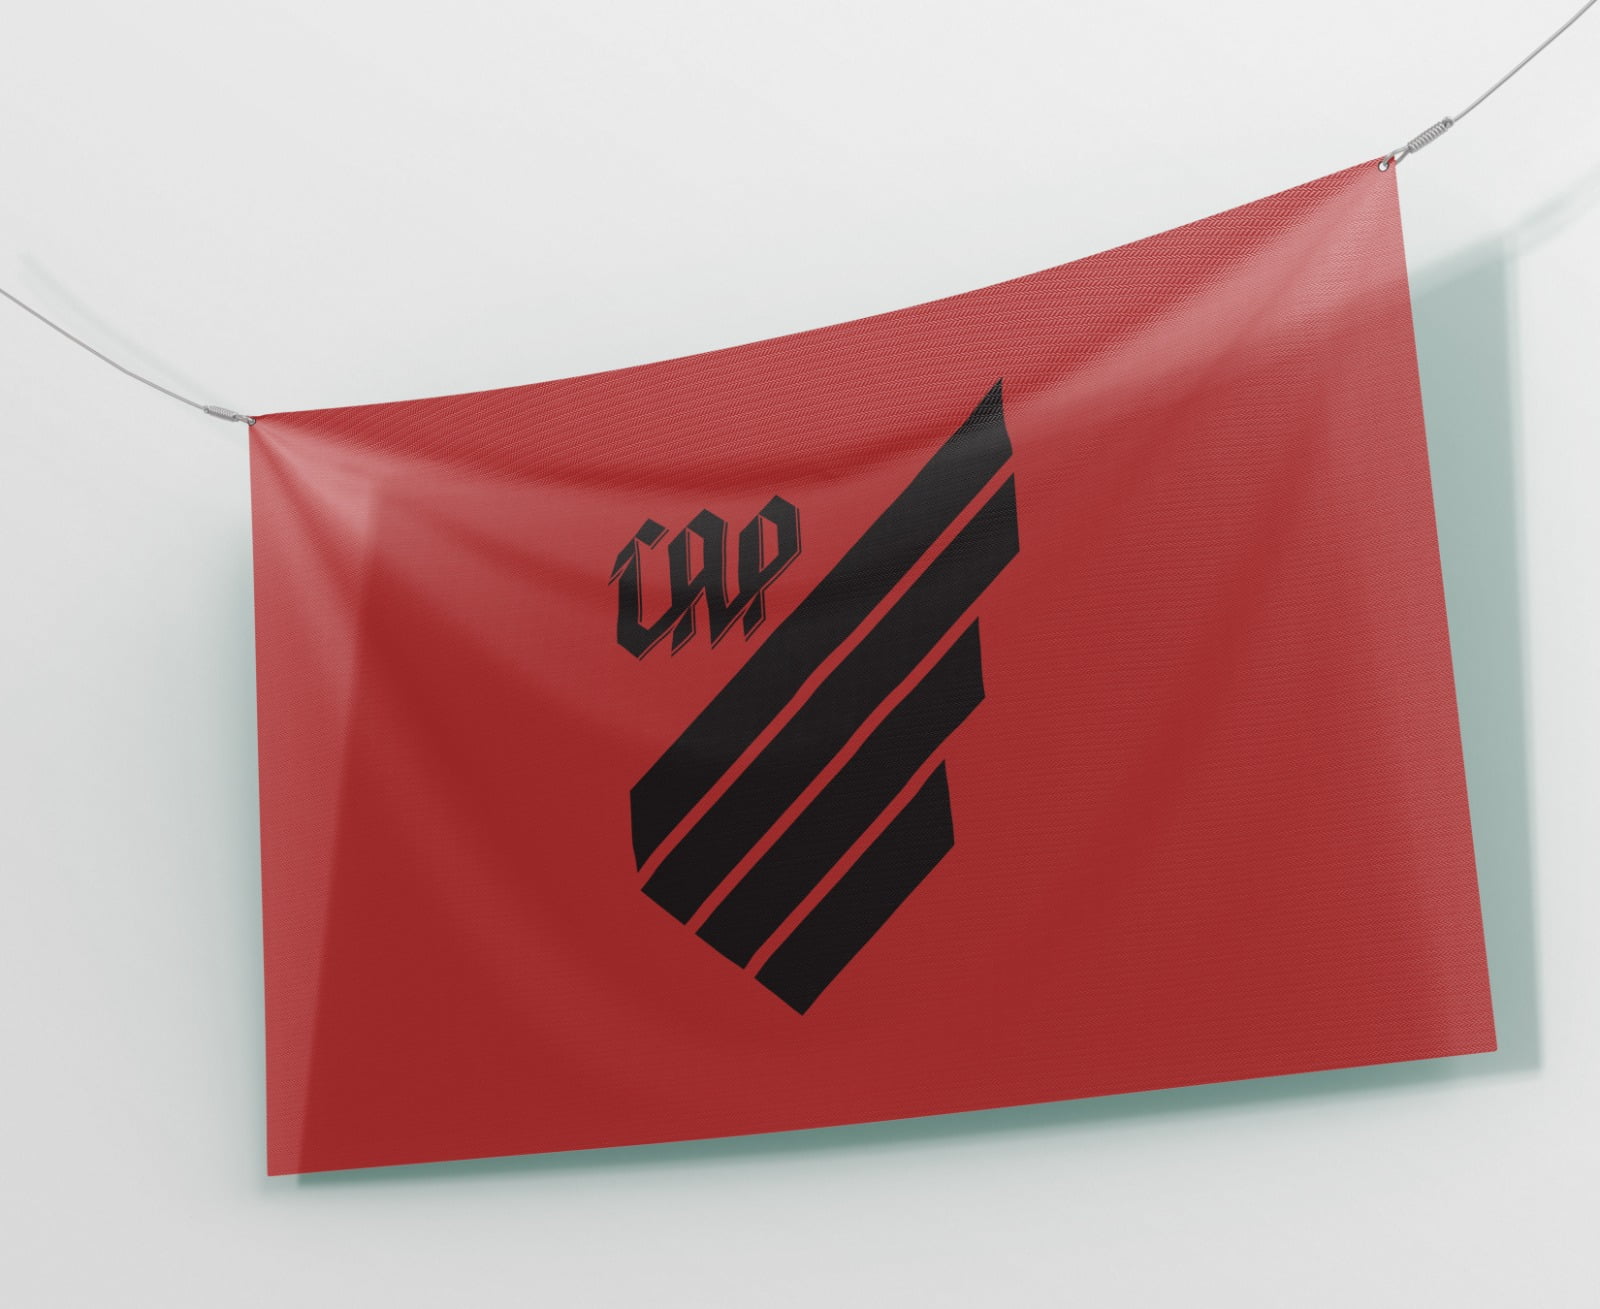 Bandeira Athletico Paranaense